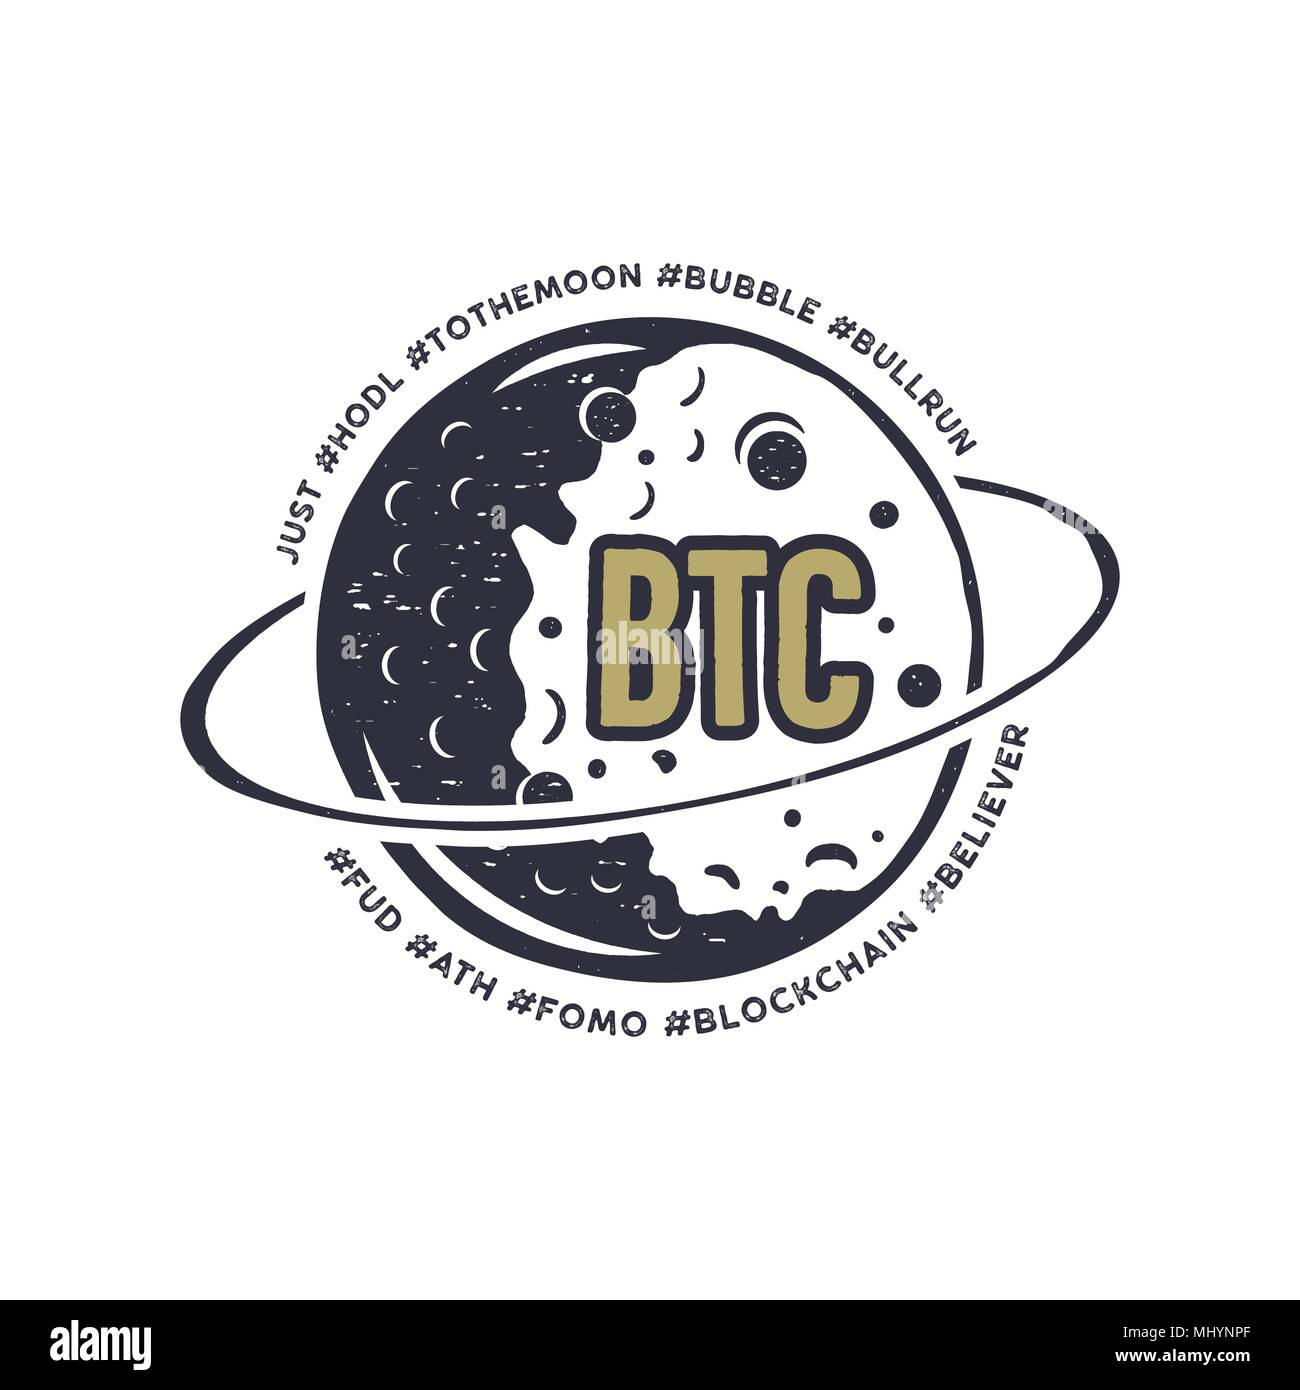 Lune emblème Bitcoin avec drôle hashtags en orbite - bulle, blockchain hodl, et d'autres. Crypto-Cadeaux T-shirt pour les geeks. Raccord en T de la technologie du design. Vector illustration en stock Illustration de Vecteur